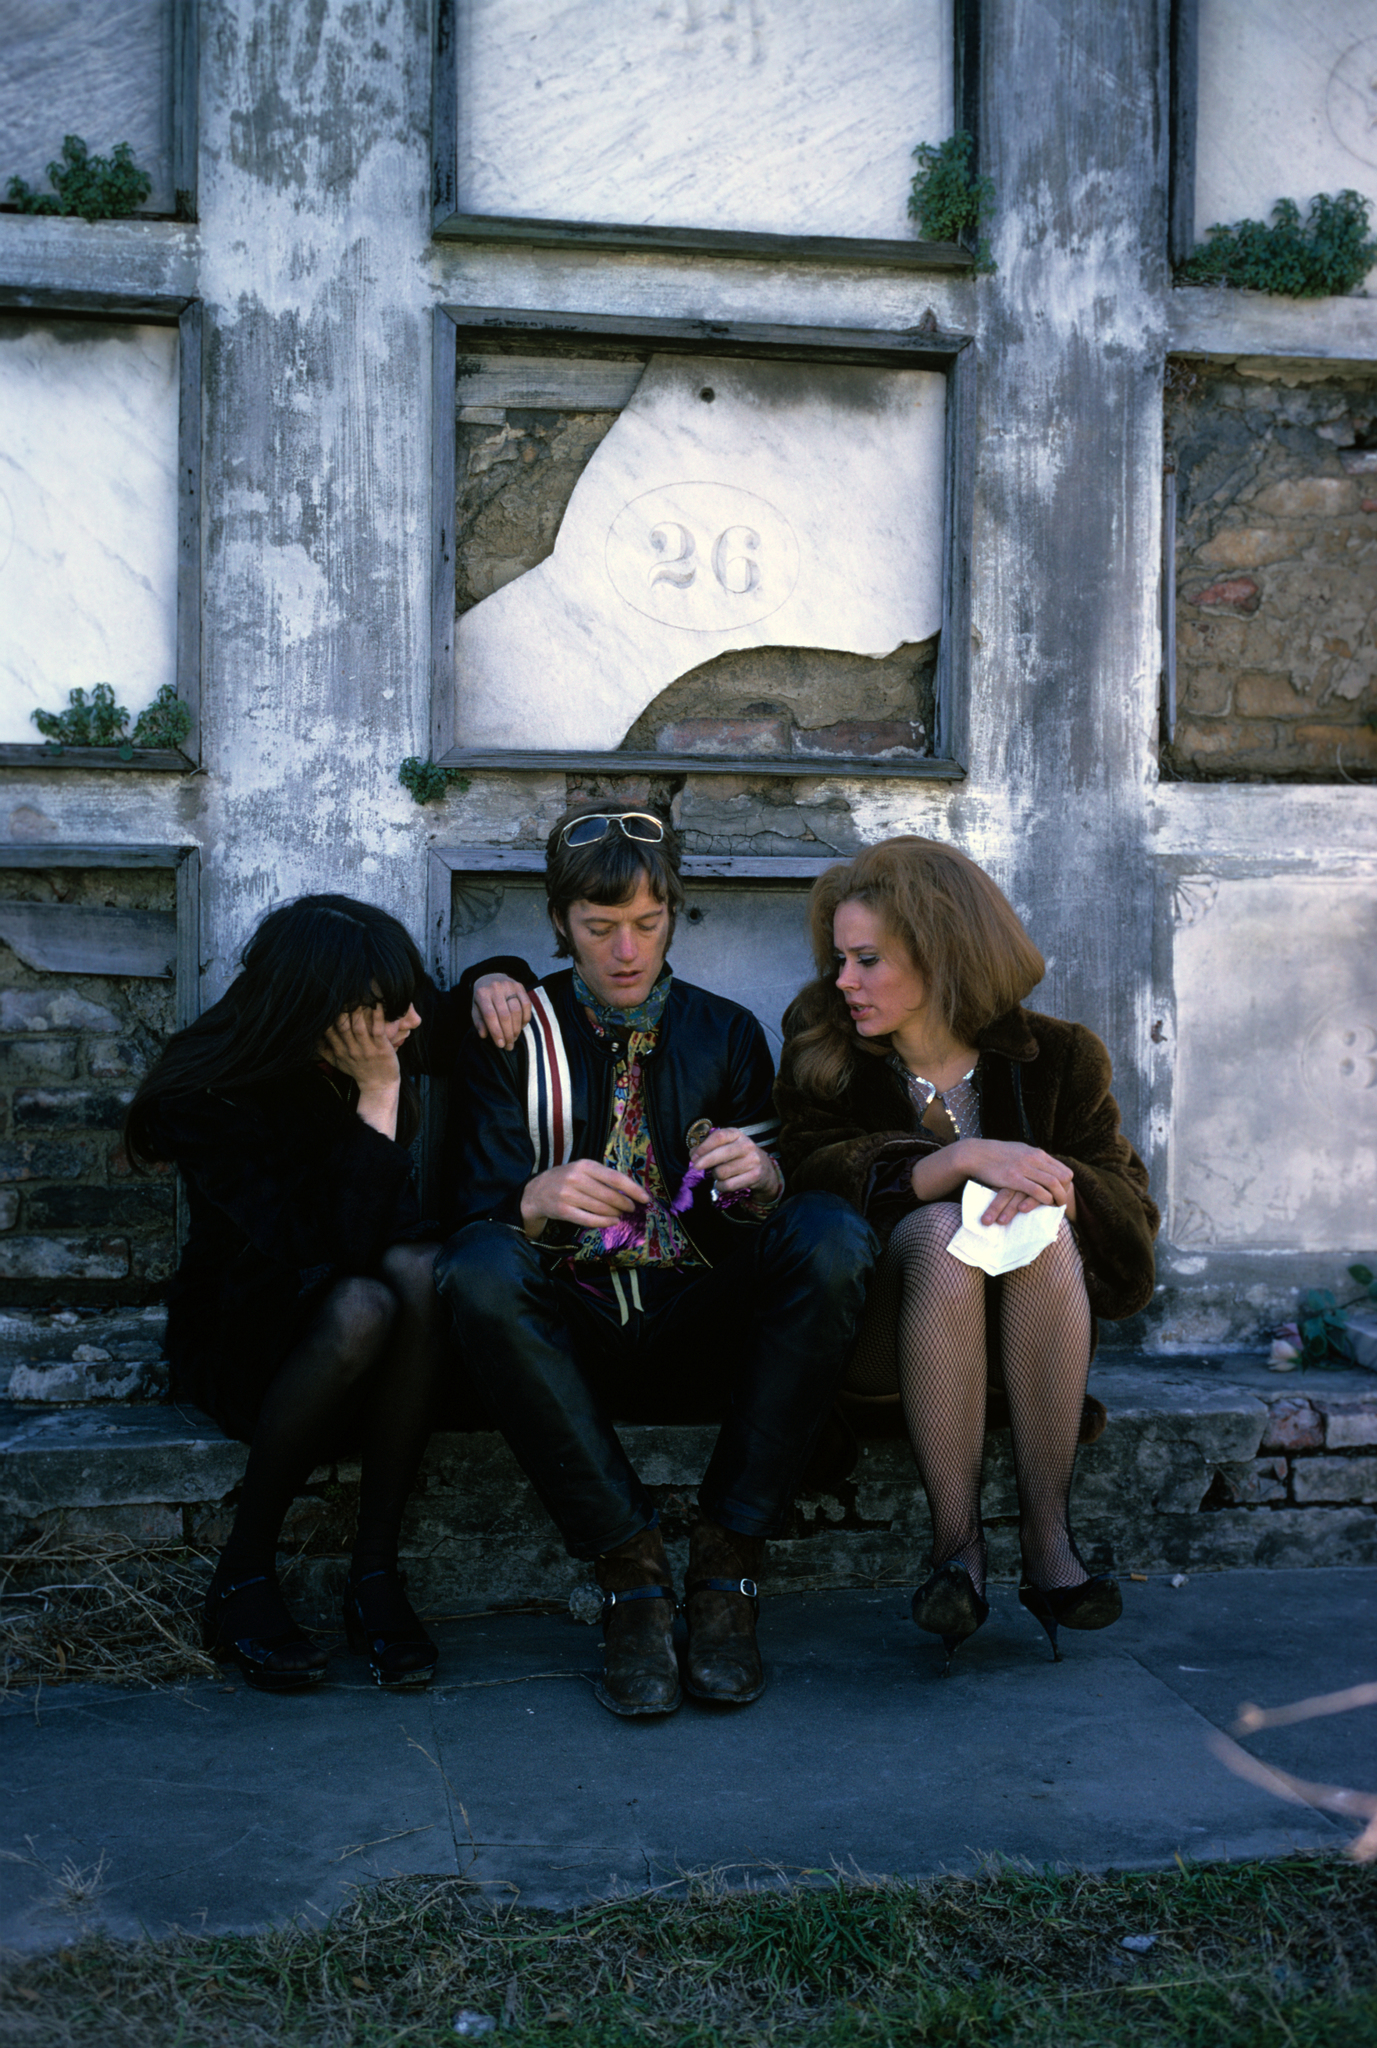 Karen Black, Peter Fonda and Toni Basil at event of Easy Rider (1969)